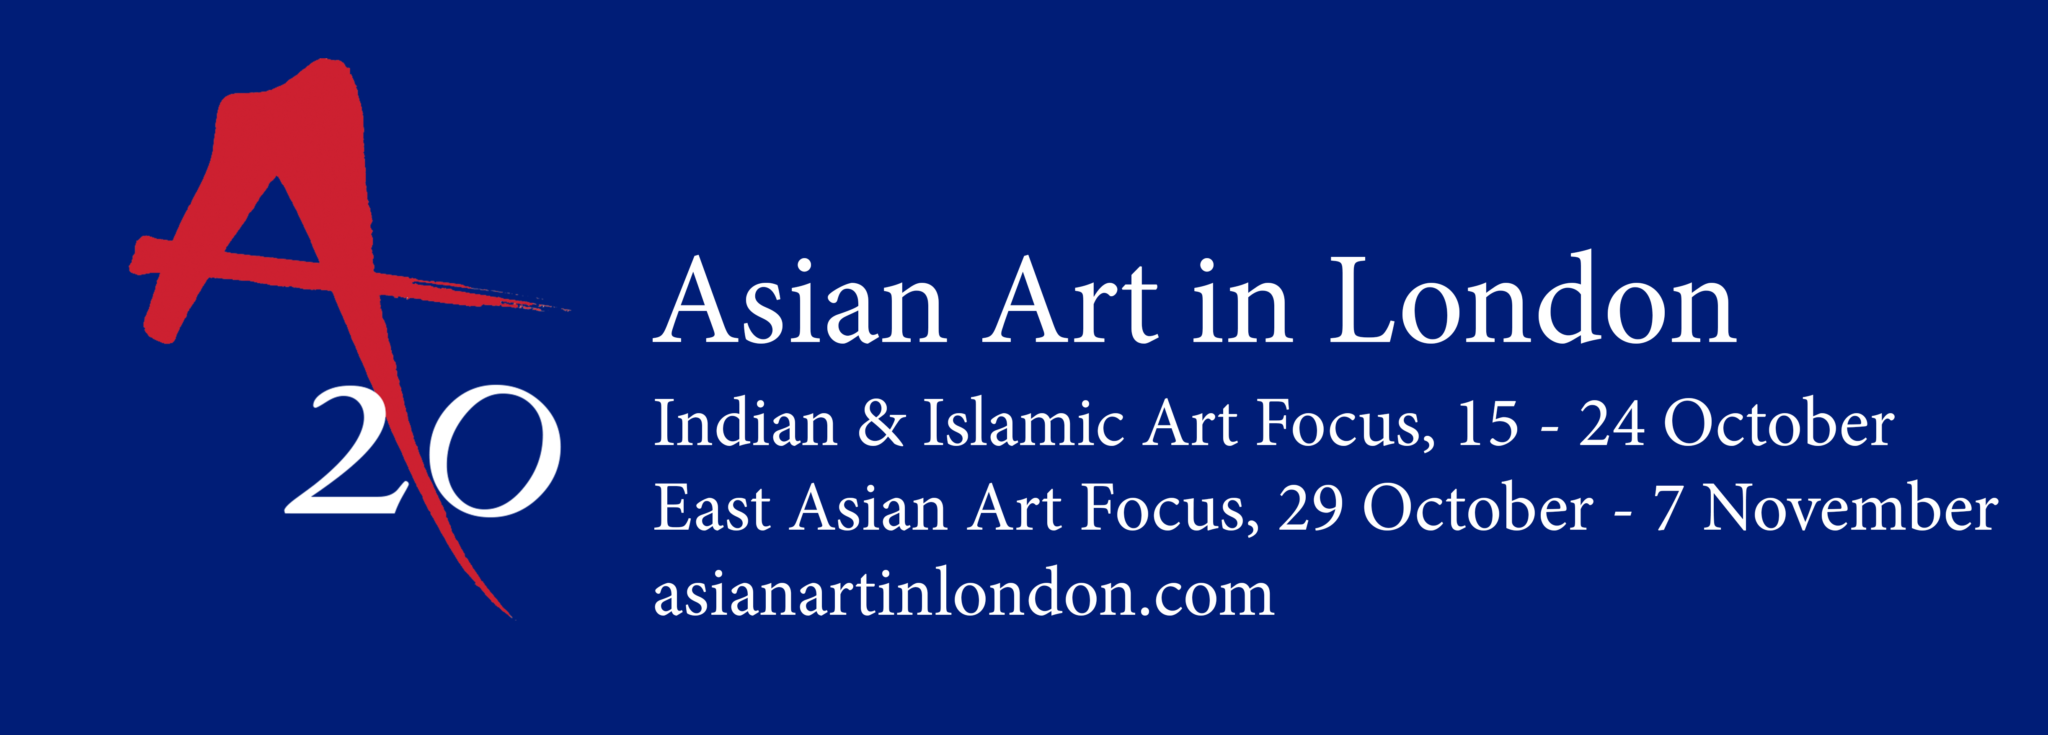 Asian Art in London 2020